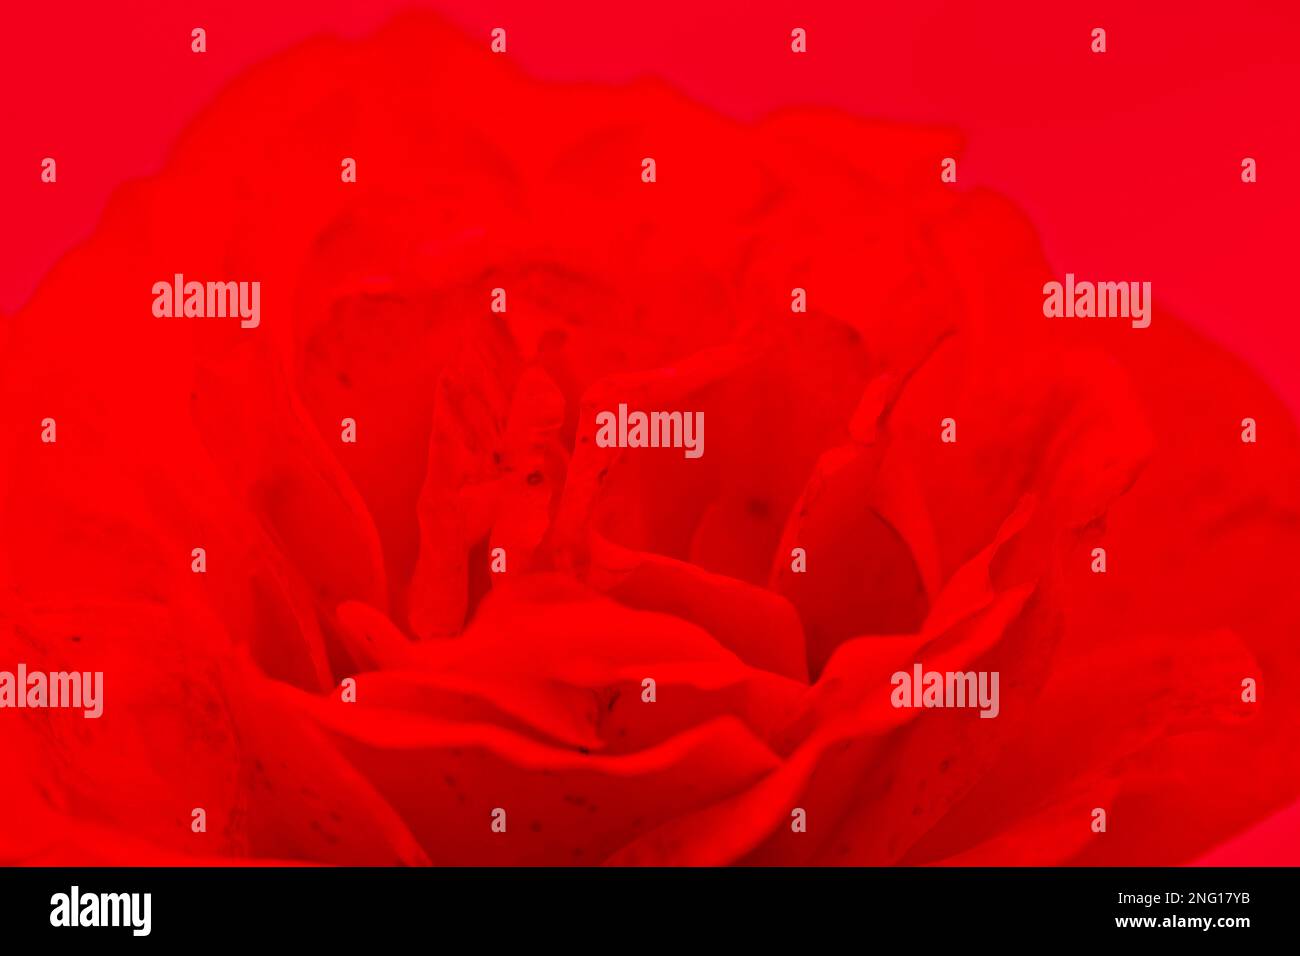 Verschwommene rote Rosenblumen, die als Hintergrund blühen. Stockfoto